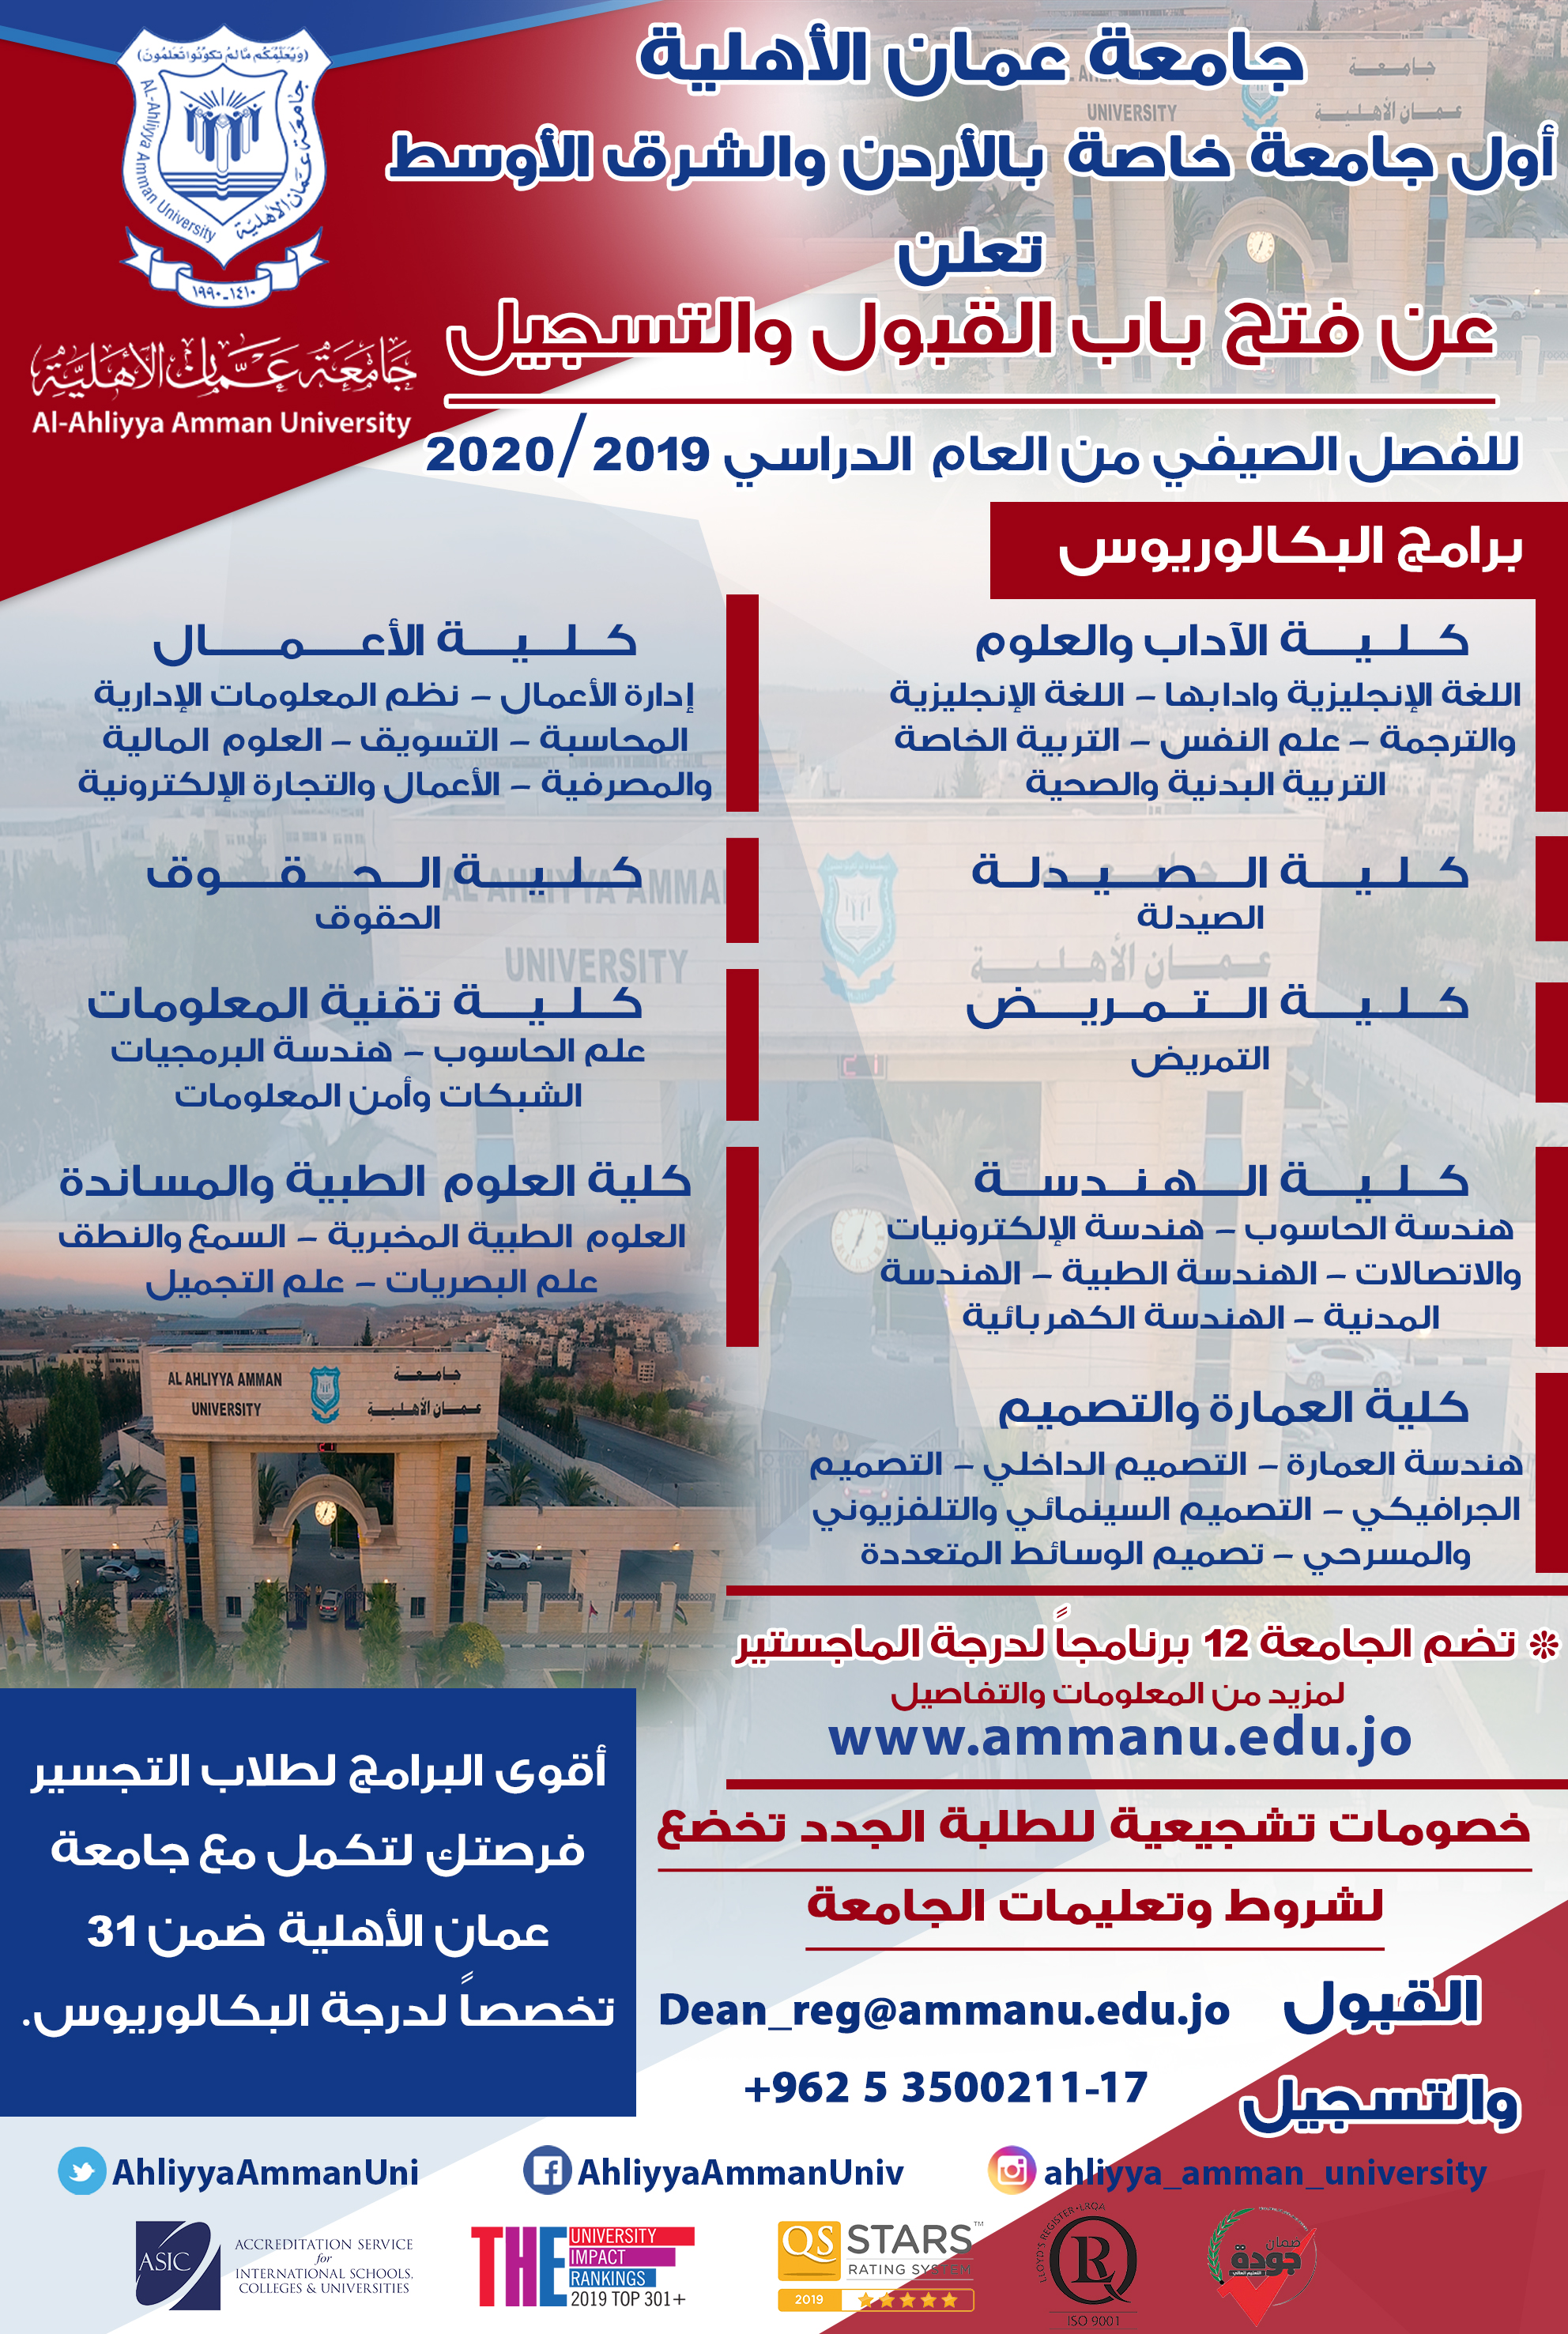 إعلان عن فتح باب القبول والتسجيل في جامعة عمان الأهلية على الفصل الدراسي الصيفي من العام الجامعي 2019 – 2020